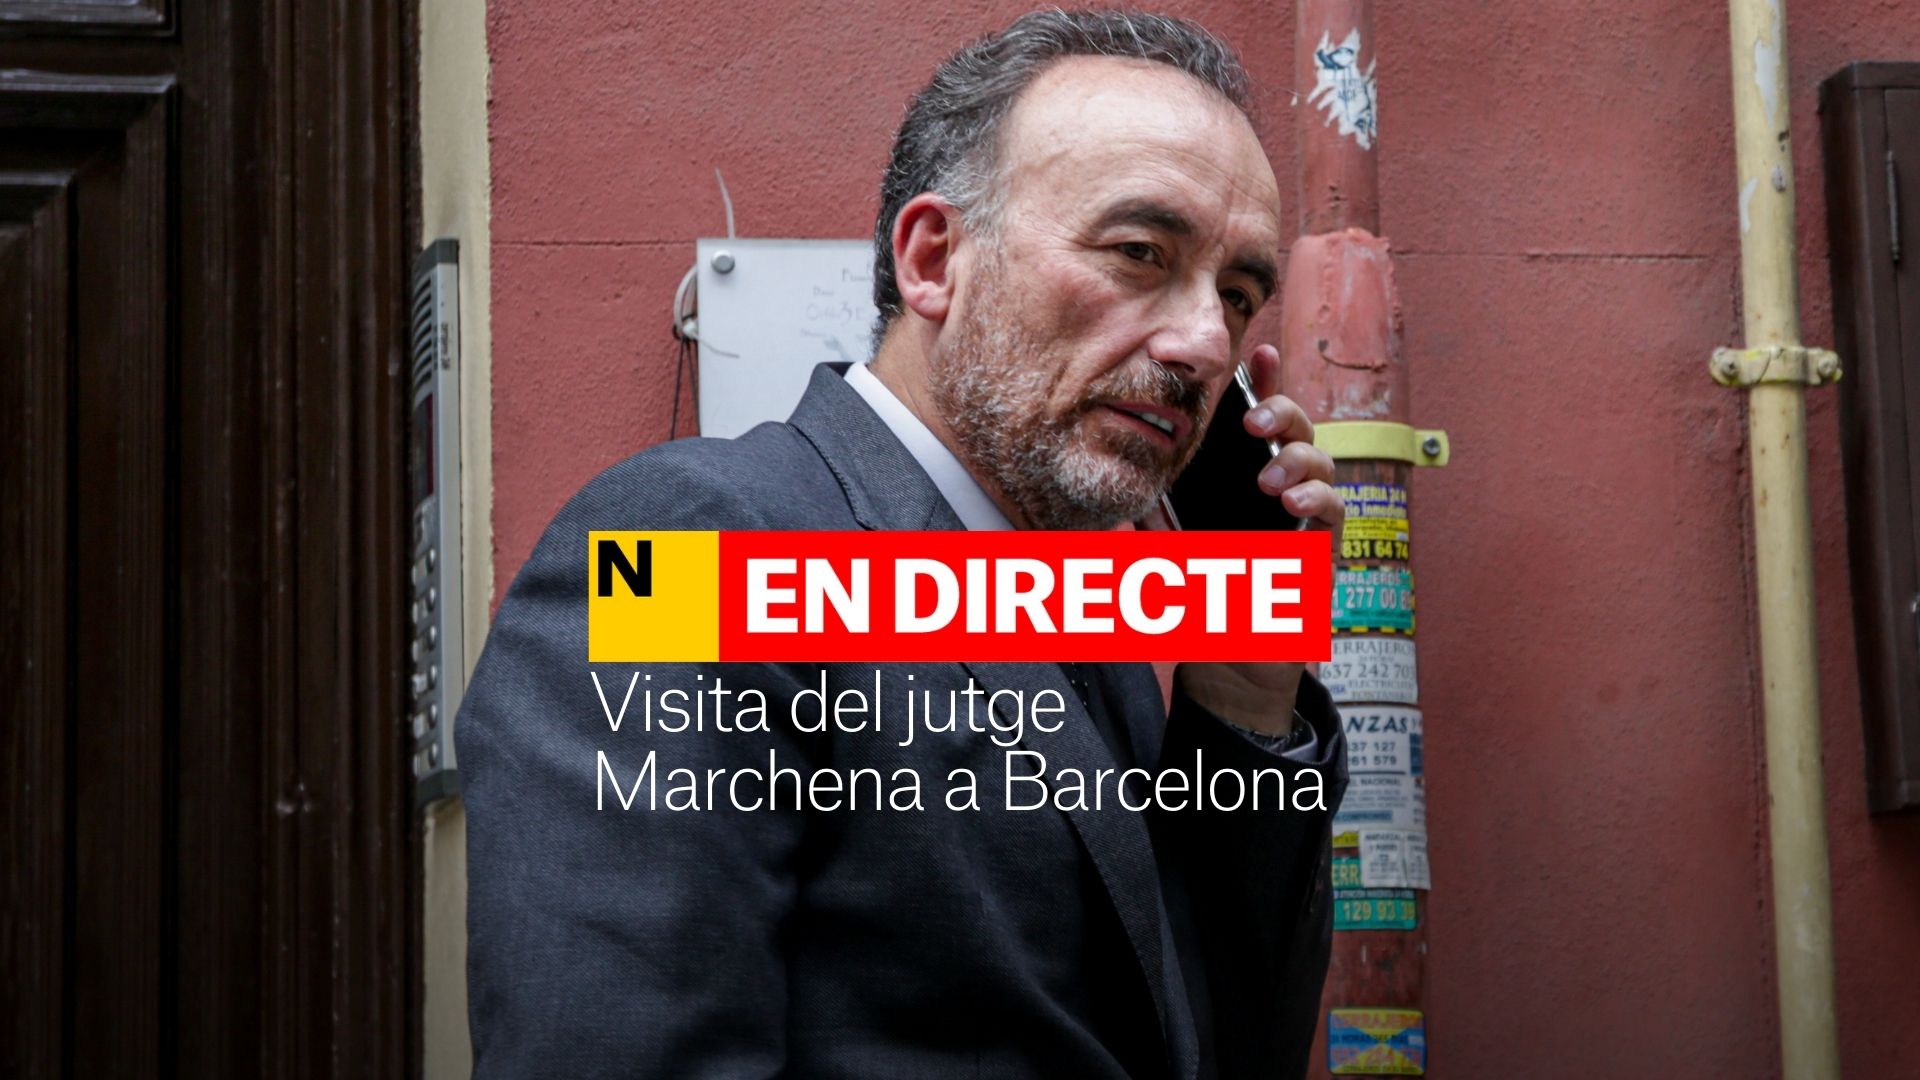 Manifestación en Barcelona por la visita del juez Manuel Marchena, DIRECTO